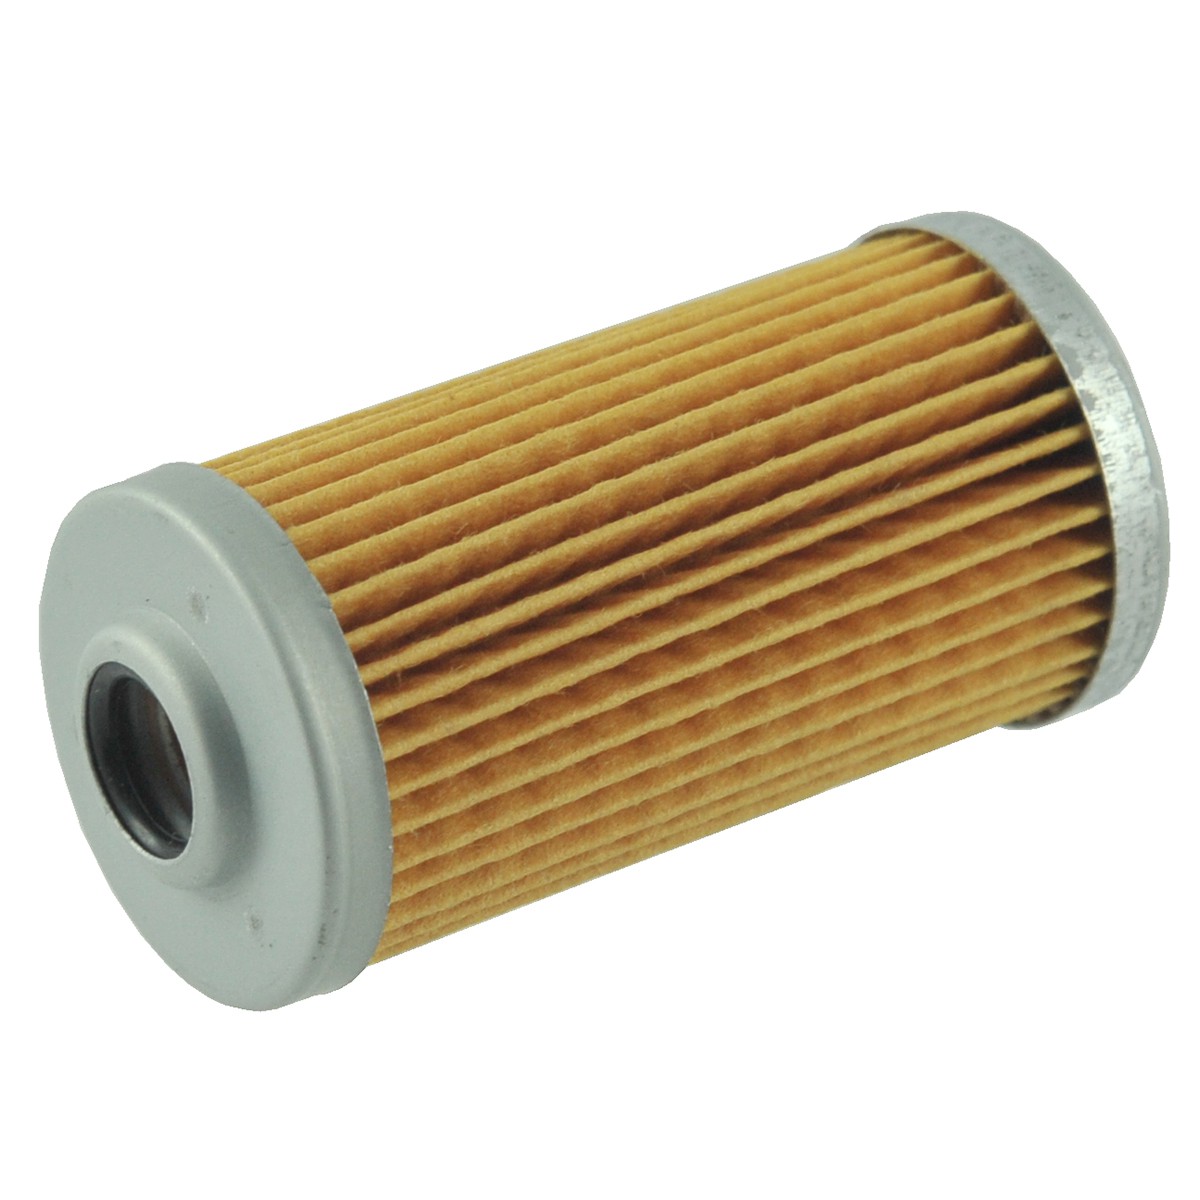 Fuel filter 35 x 67 mm / LS i285 / LS R28i / 40052822 / MM32088601 / 40049406